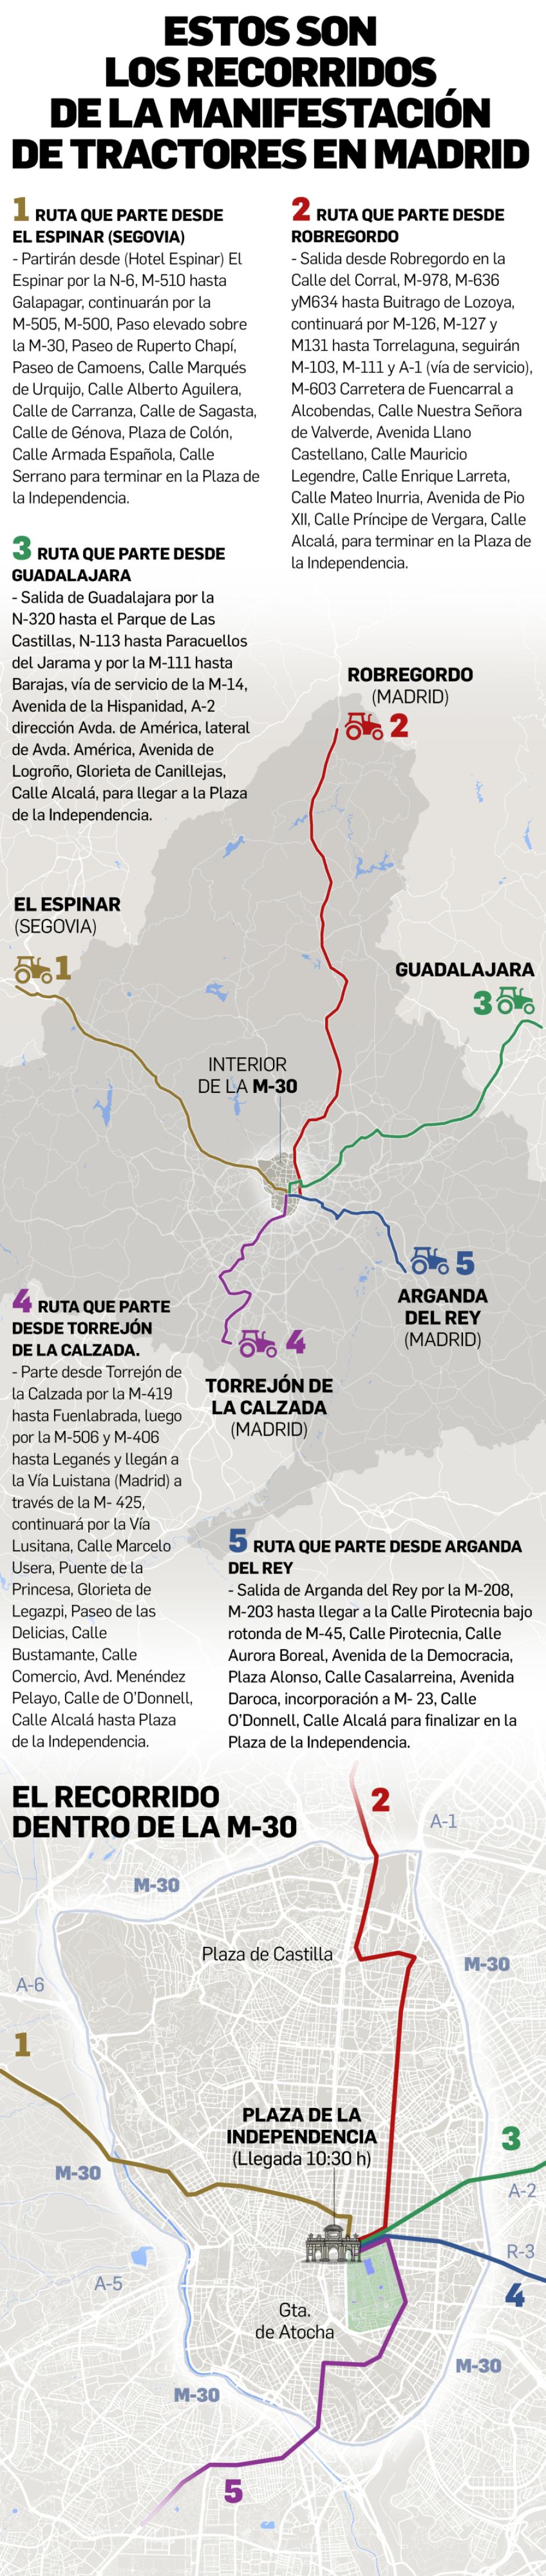 Gráfico del recorrido y cortes de tráfico de la tractorada de Madrid